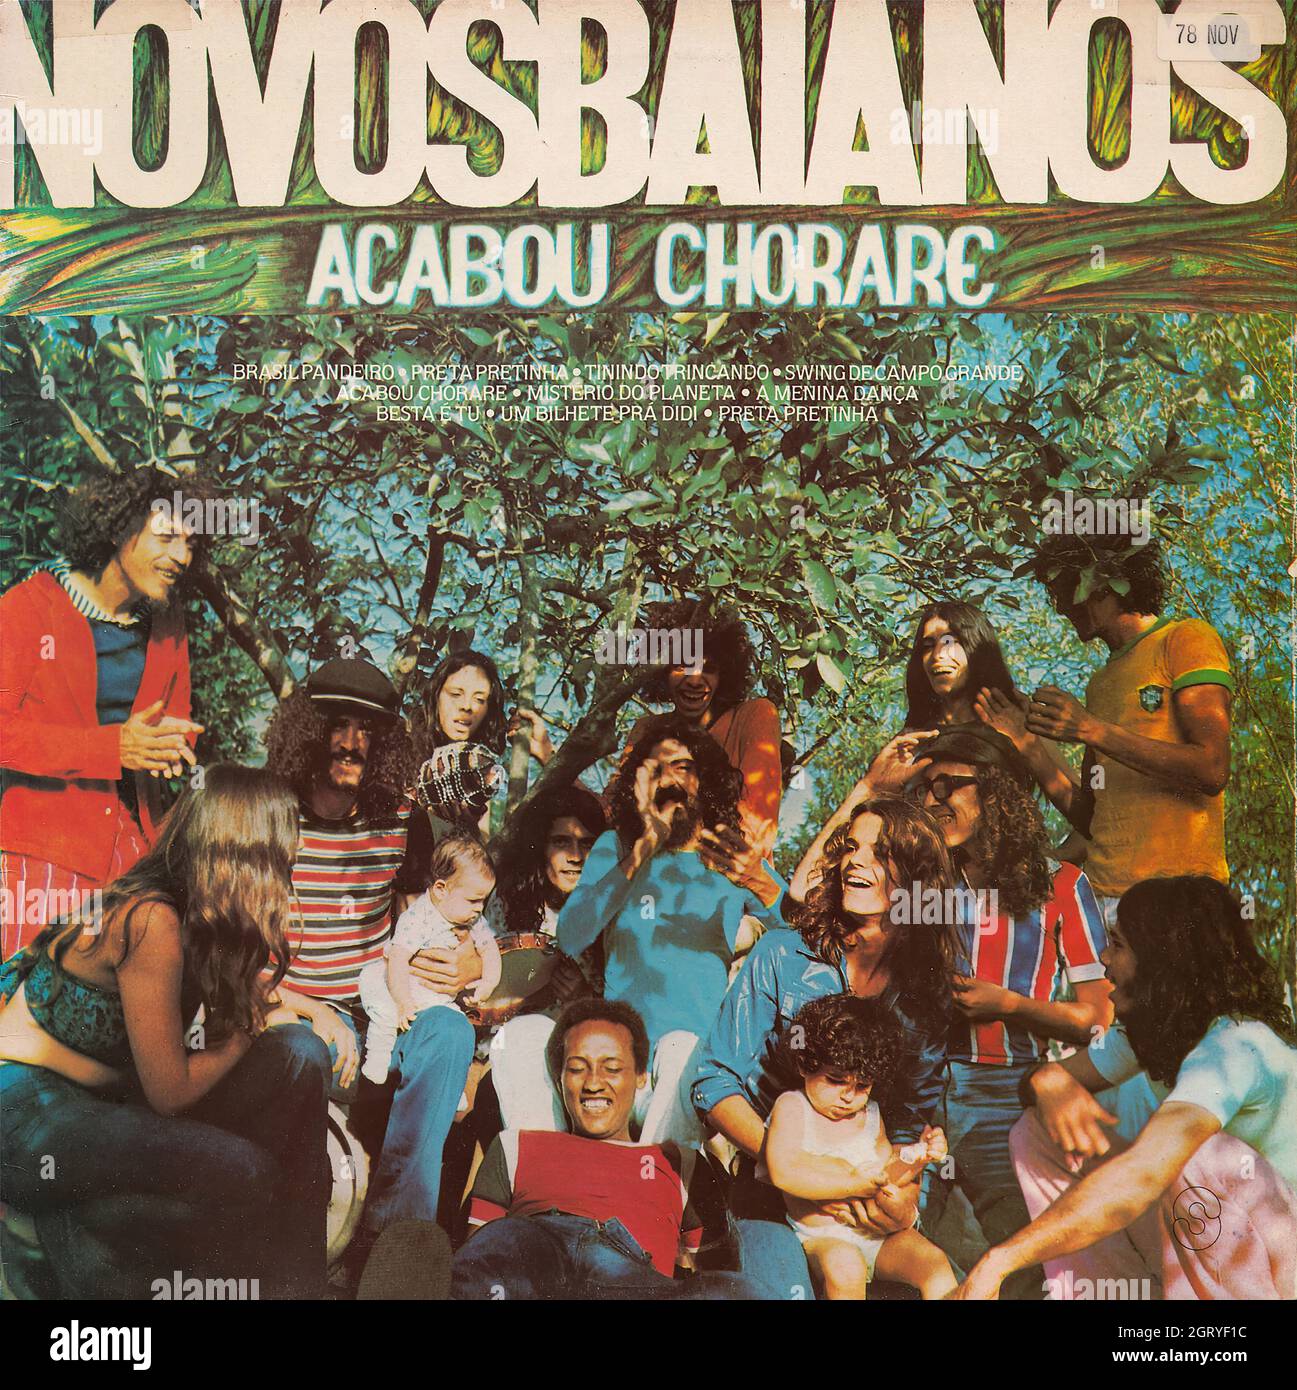 Novos Baianos - Acabou chorare - Vintage Vinyl Record Cover Stock